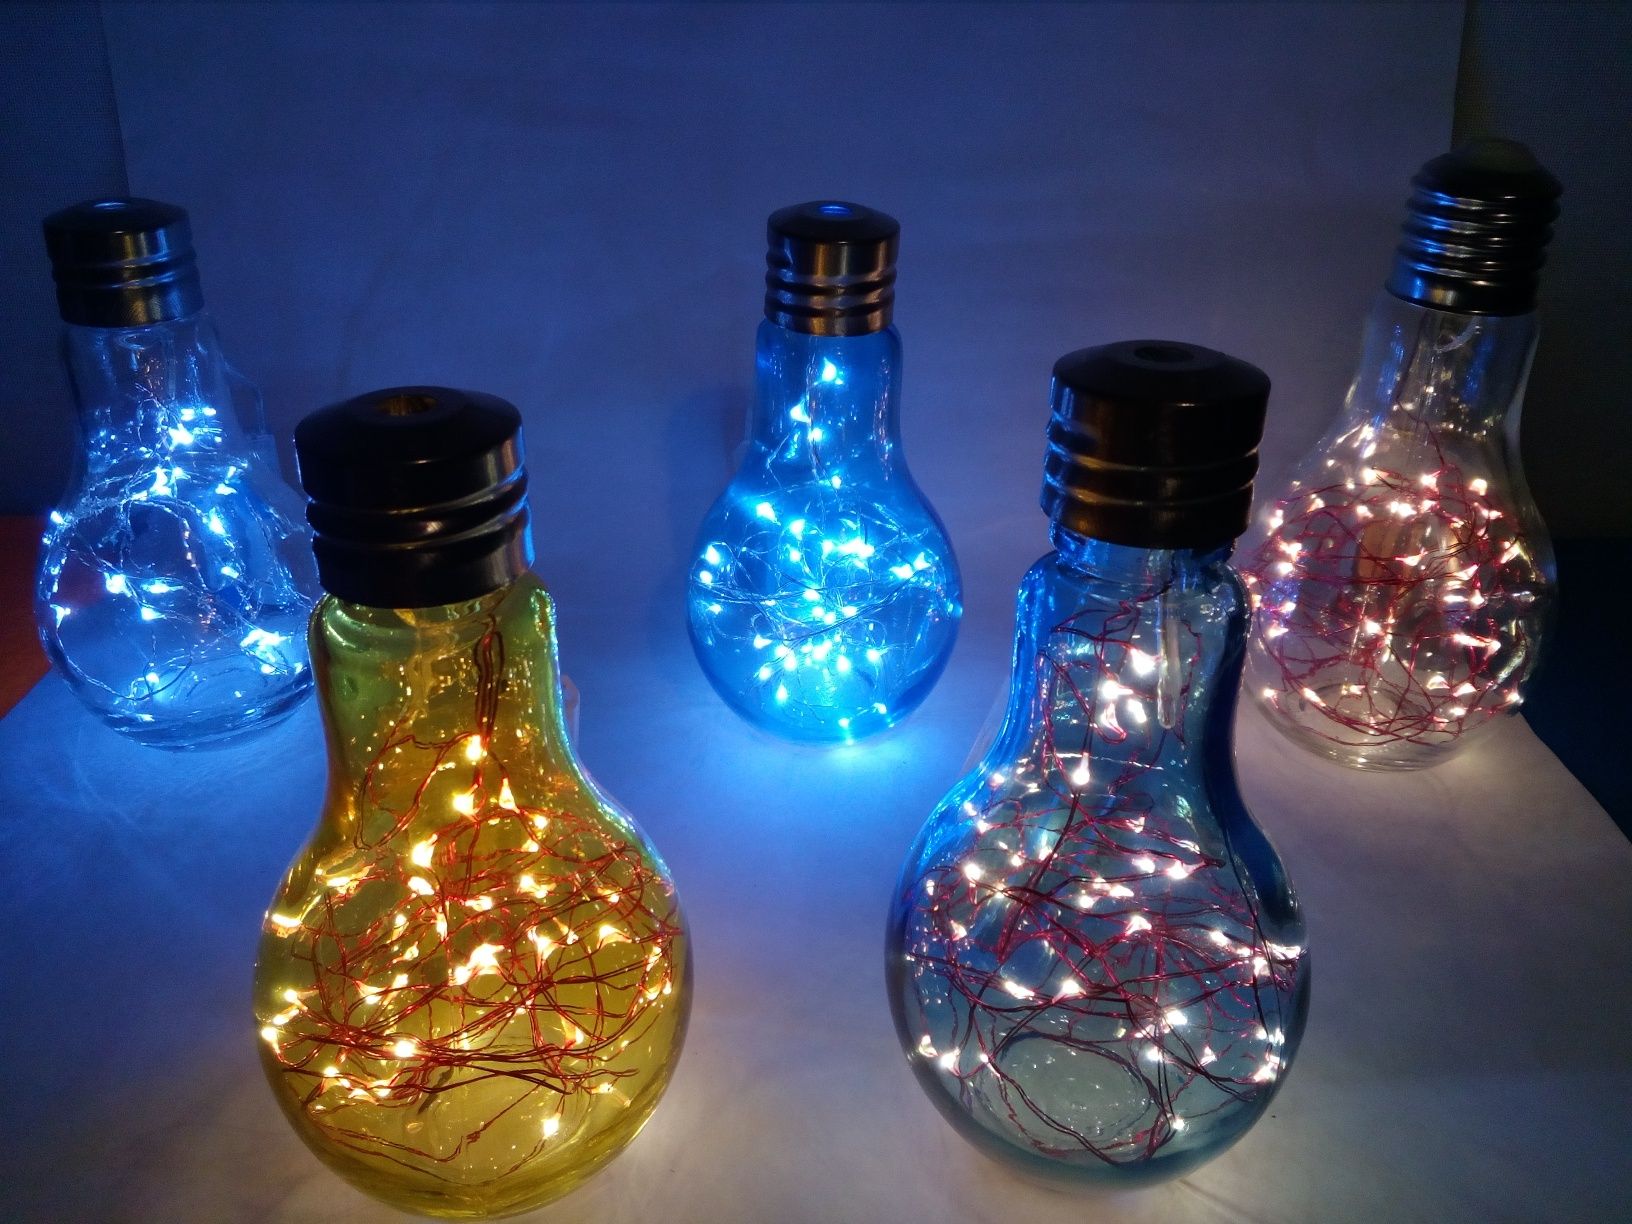 Ofereça de um modo criativo no Natal lâmpadas e/ou garrafas iluminadas